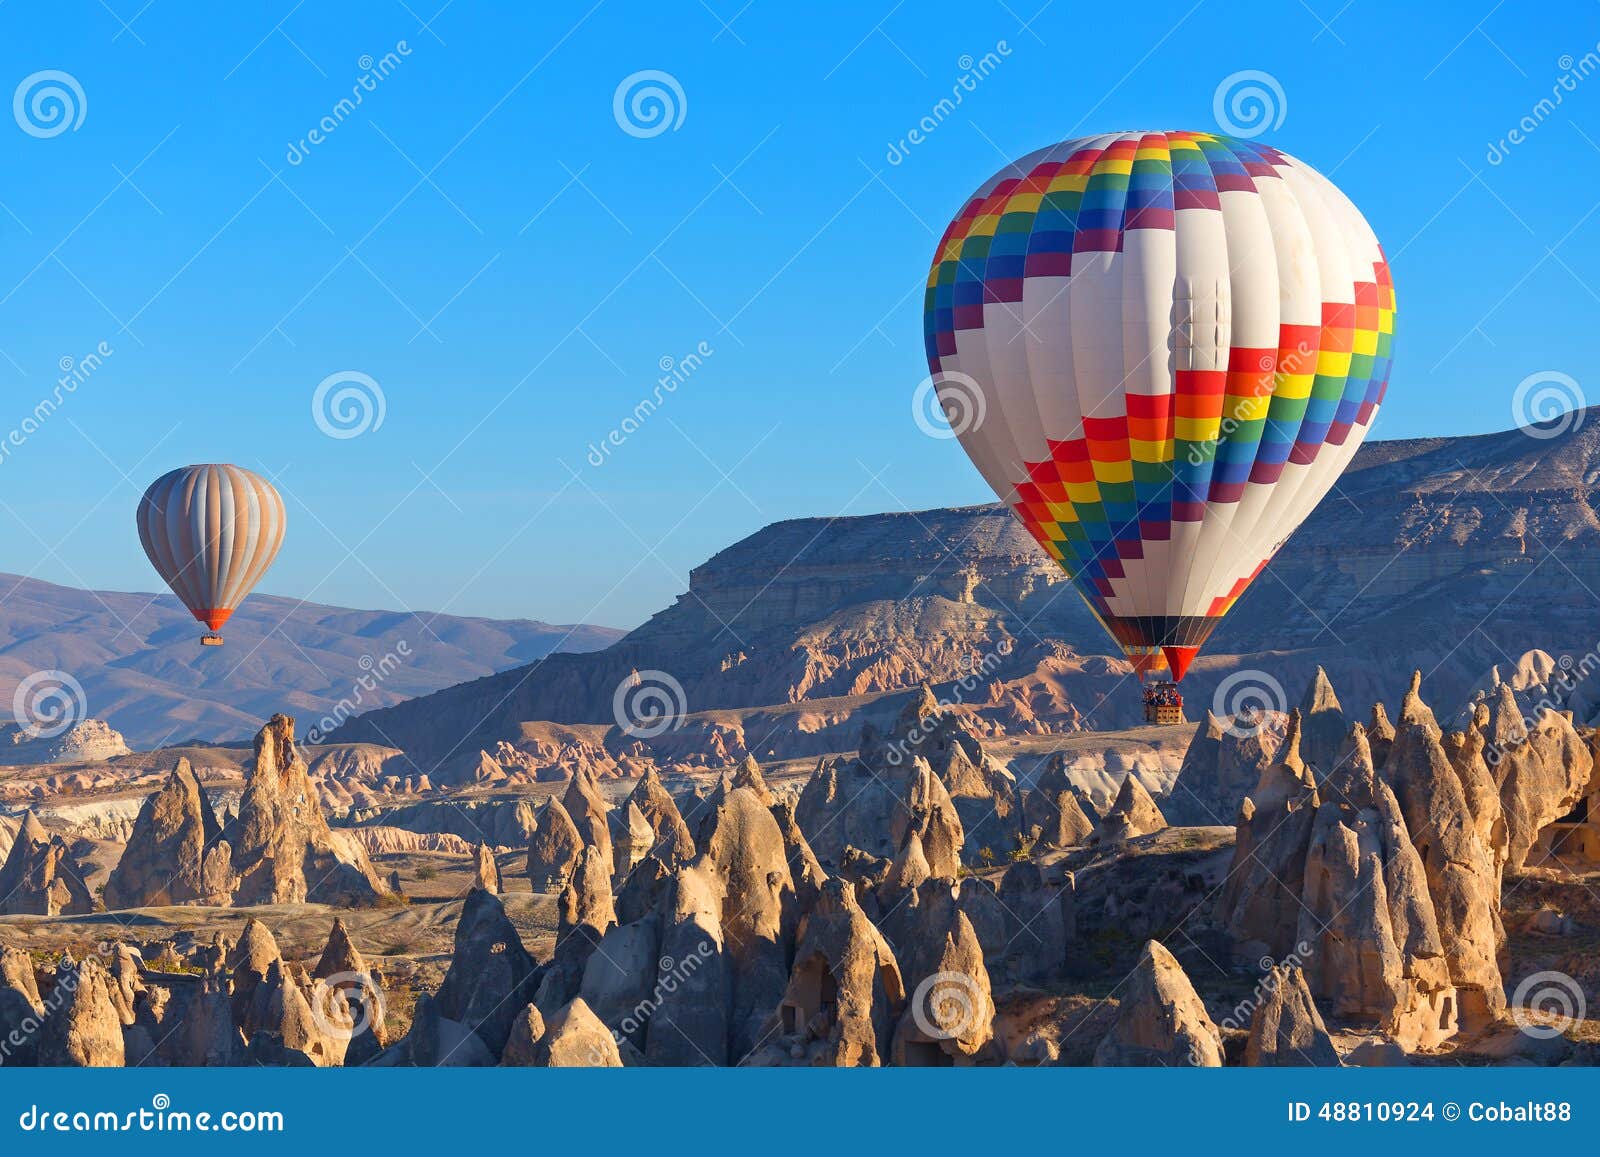 Cappadocia foto de archivo. Imagen de turismo, recorrido - 48810924